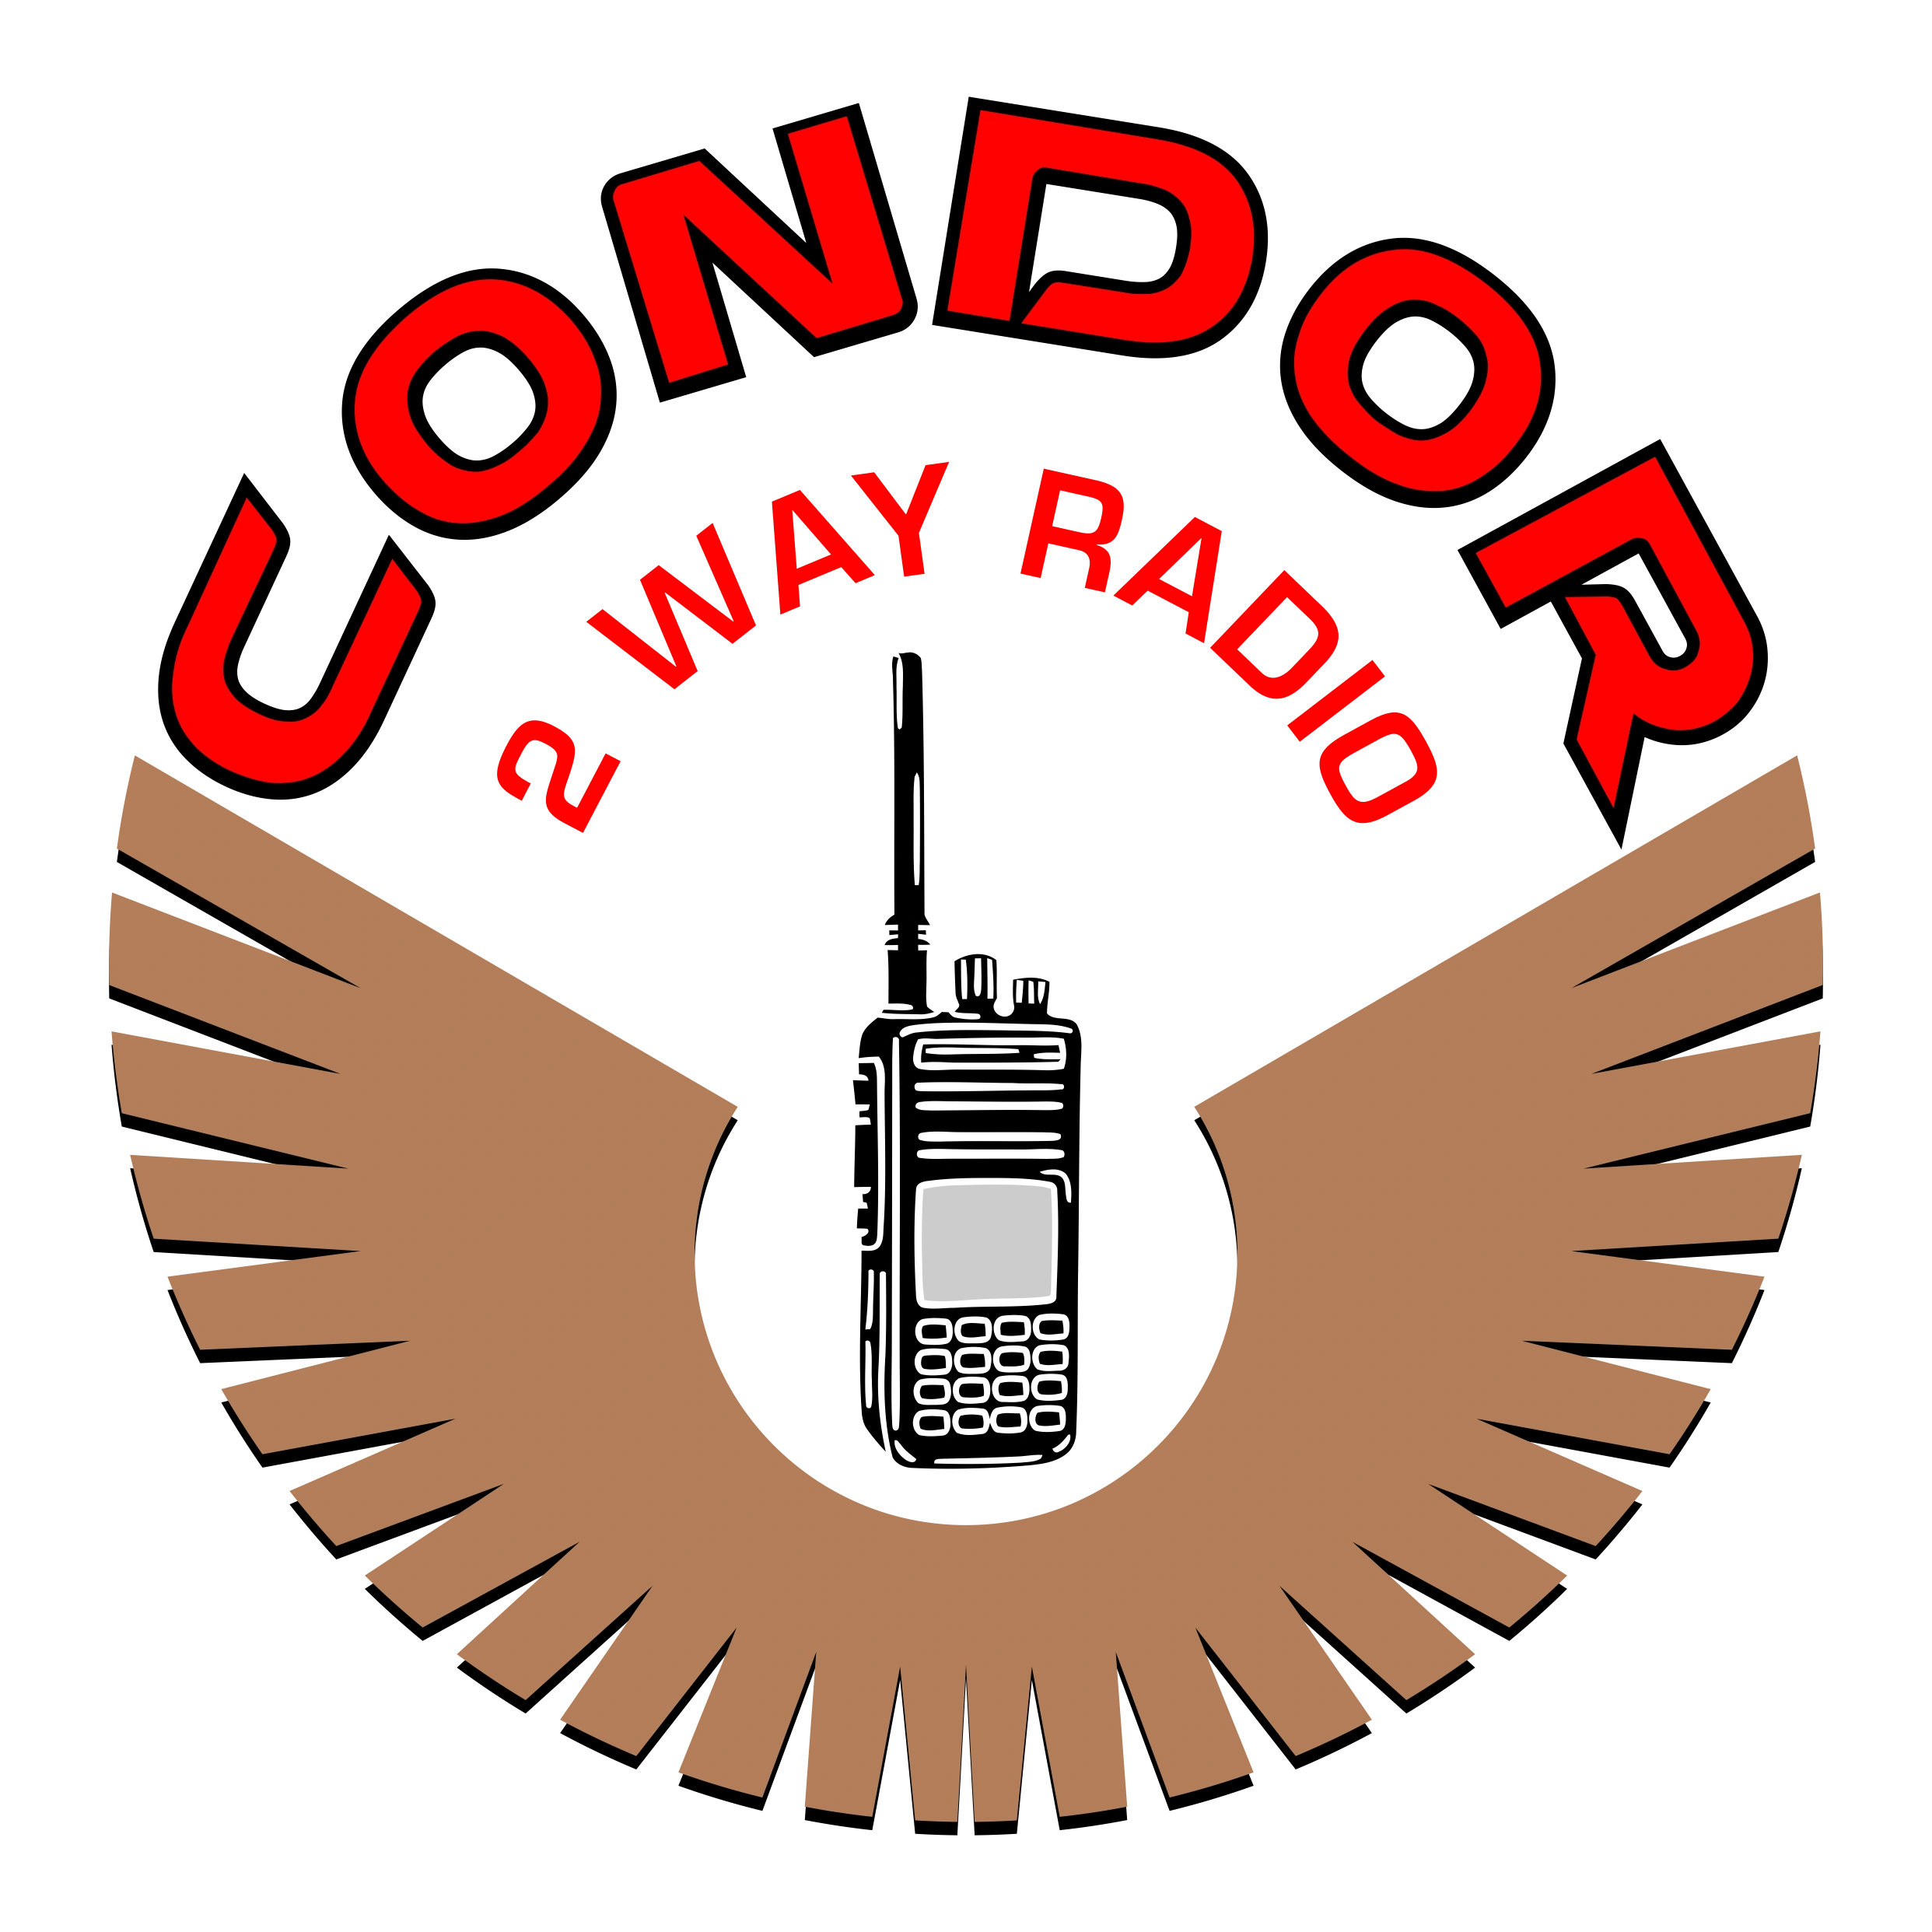 Condor 2Way Radio - Two Way Radios, Radio Repair